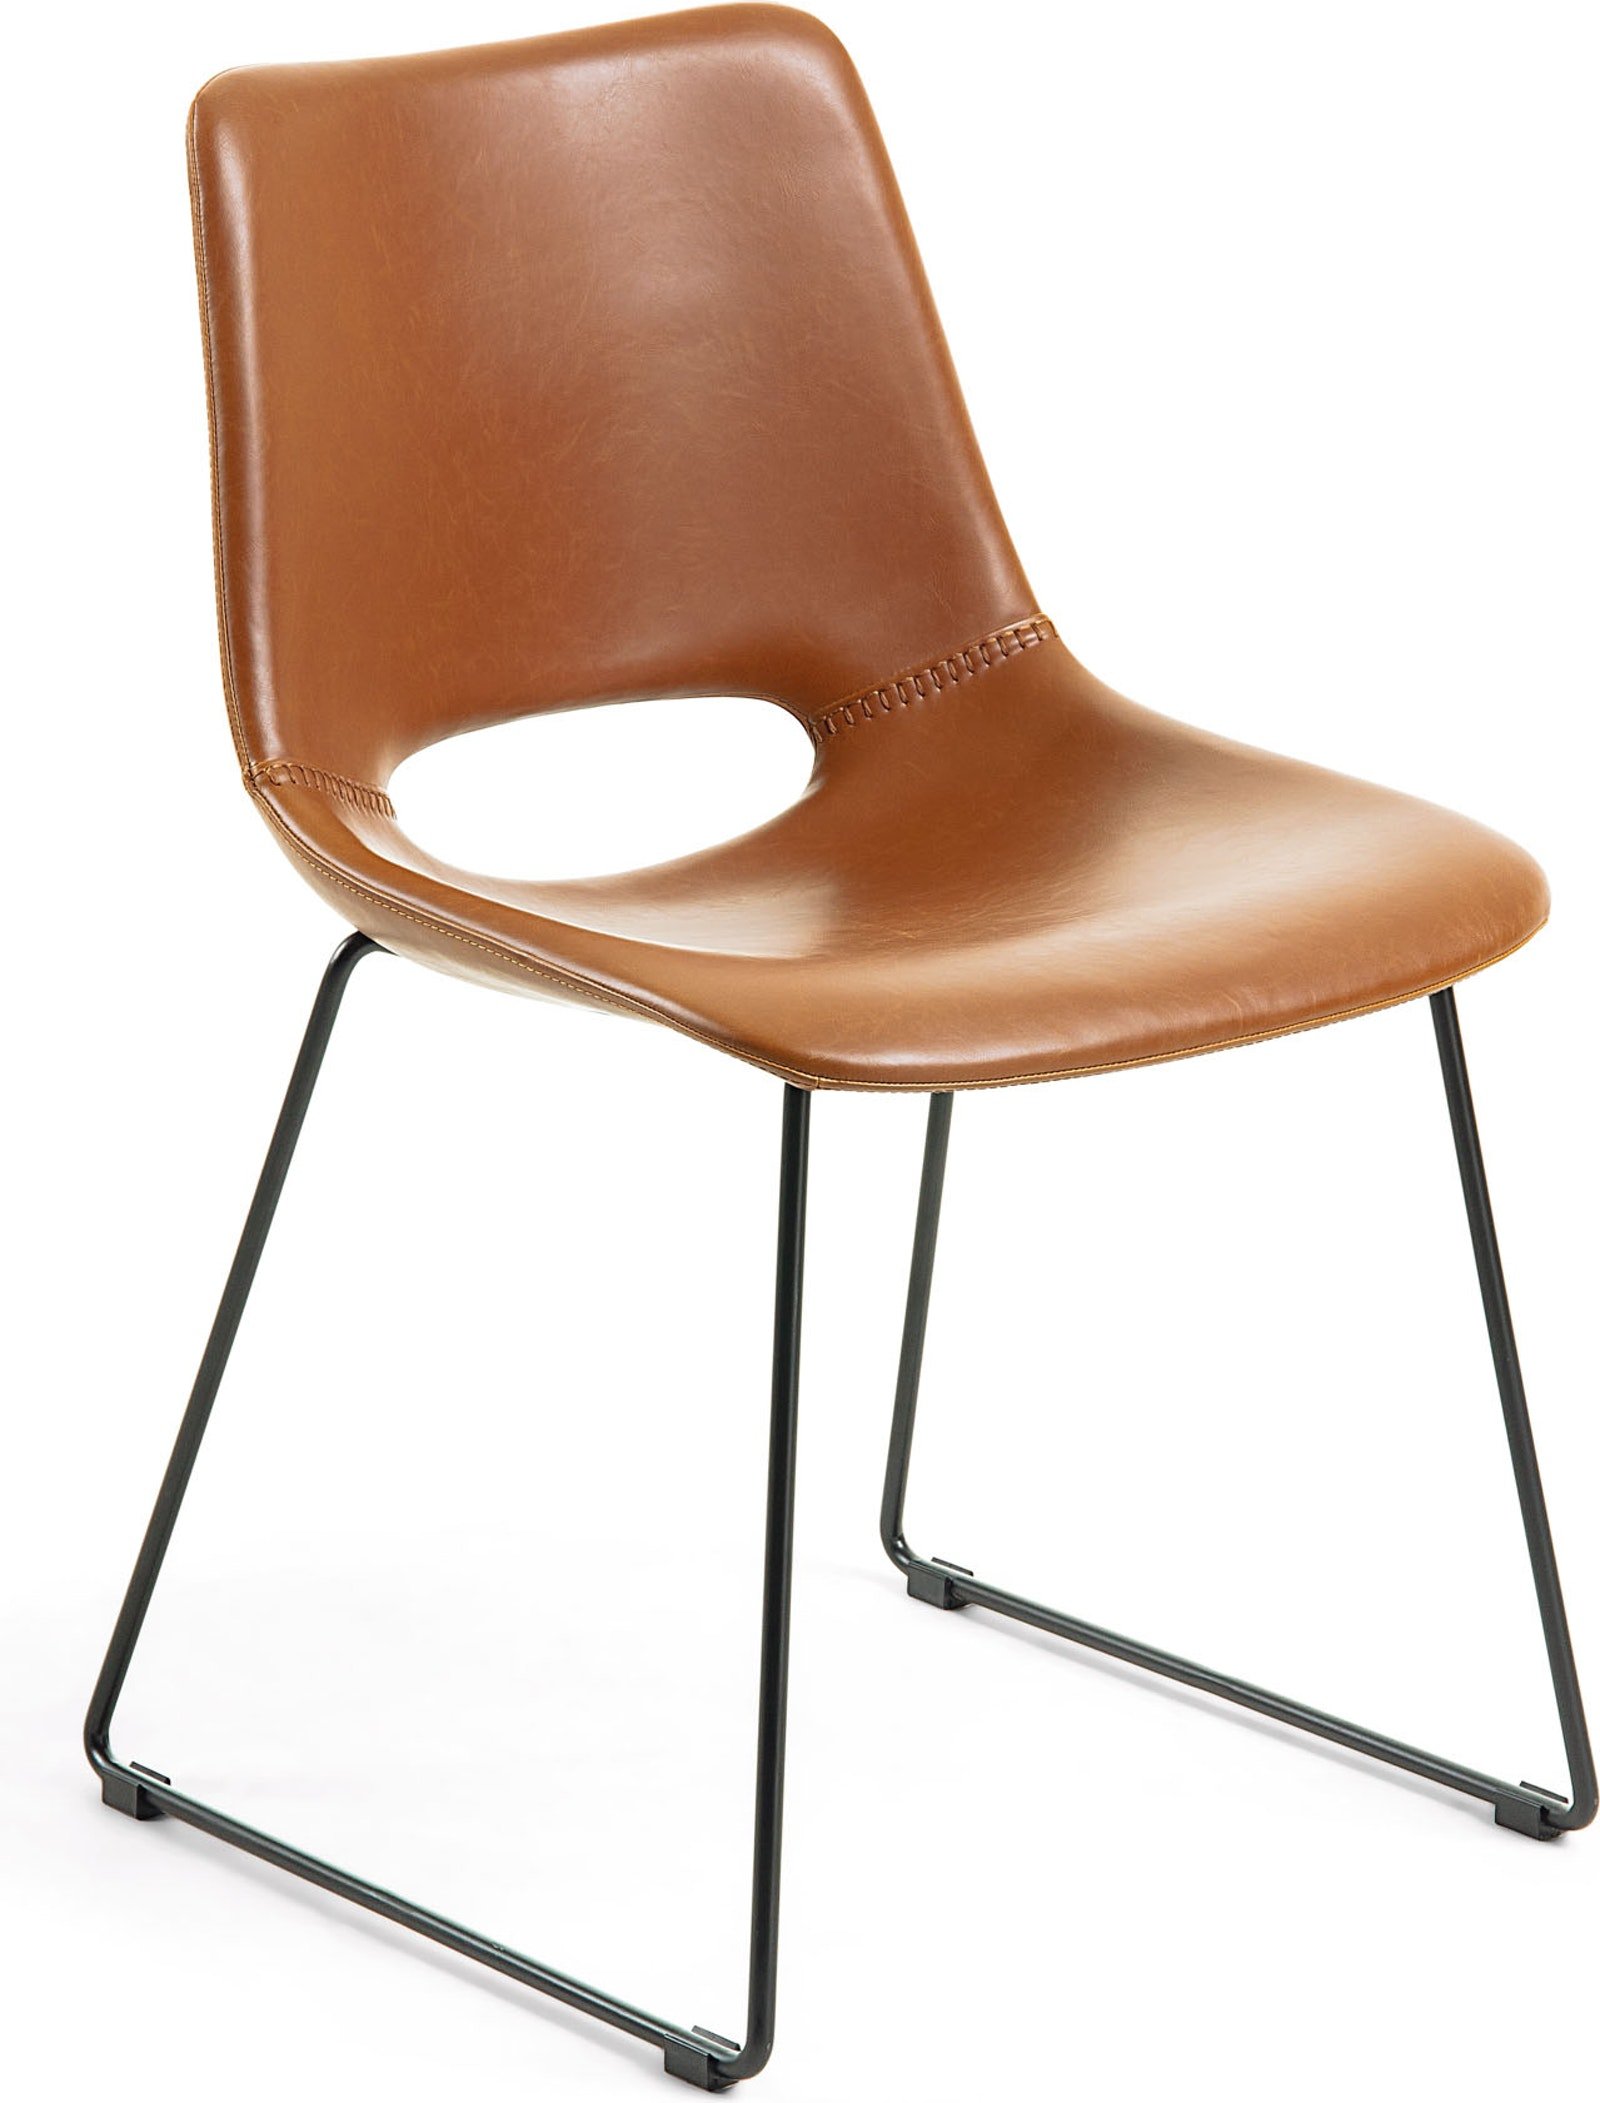 Zahara, Spisebordsstol, moderne, læder by LaForma (H: 78 cm. B: 49 cm. L: 55 cm., Brun/Sort)